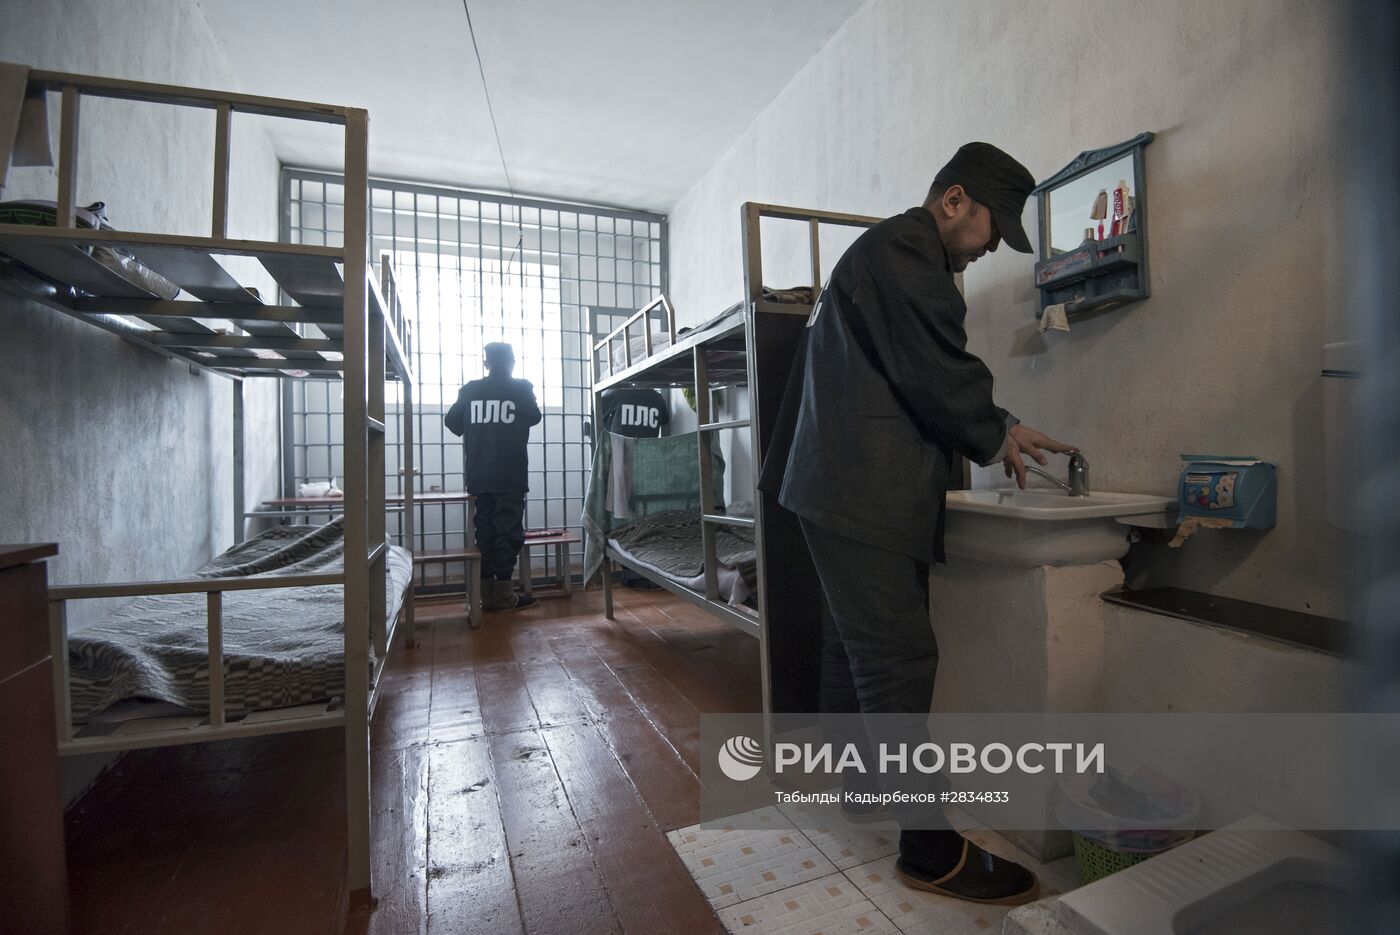 Колония для пожизненно осужденных в Киргизии